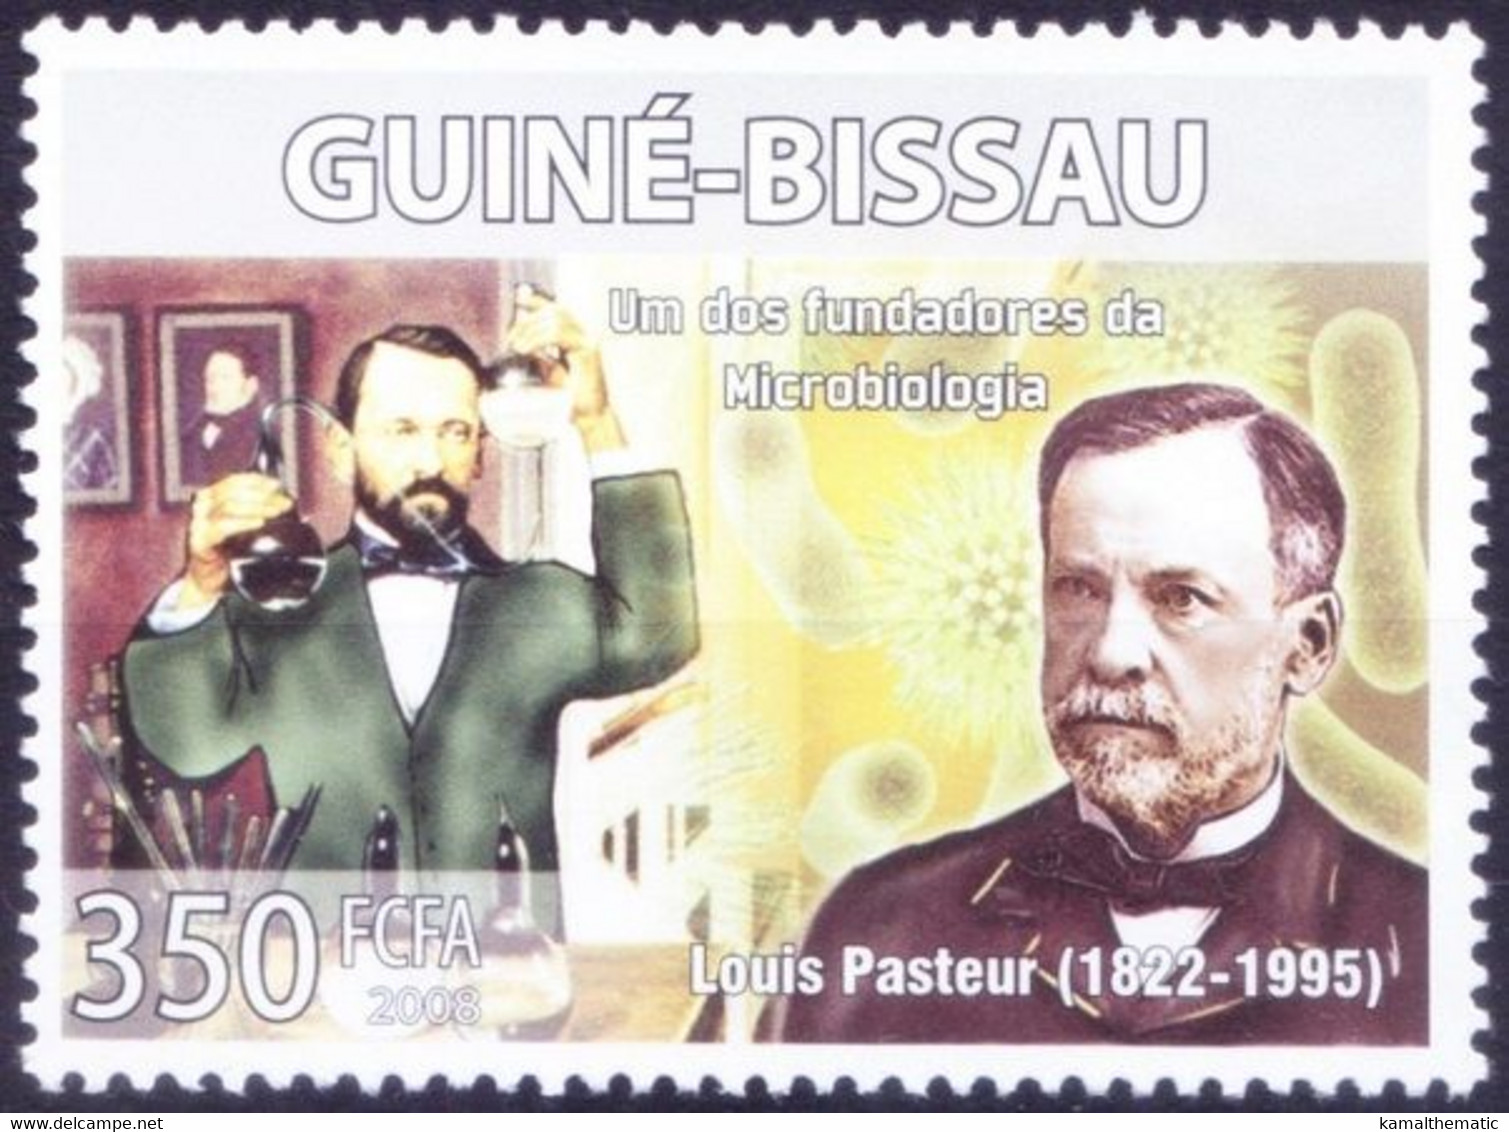 Louis Pasteur Discovered Principles Vaccination, Medicine, Guinea Bissau 2008 MNH - Louis Pasteur